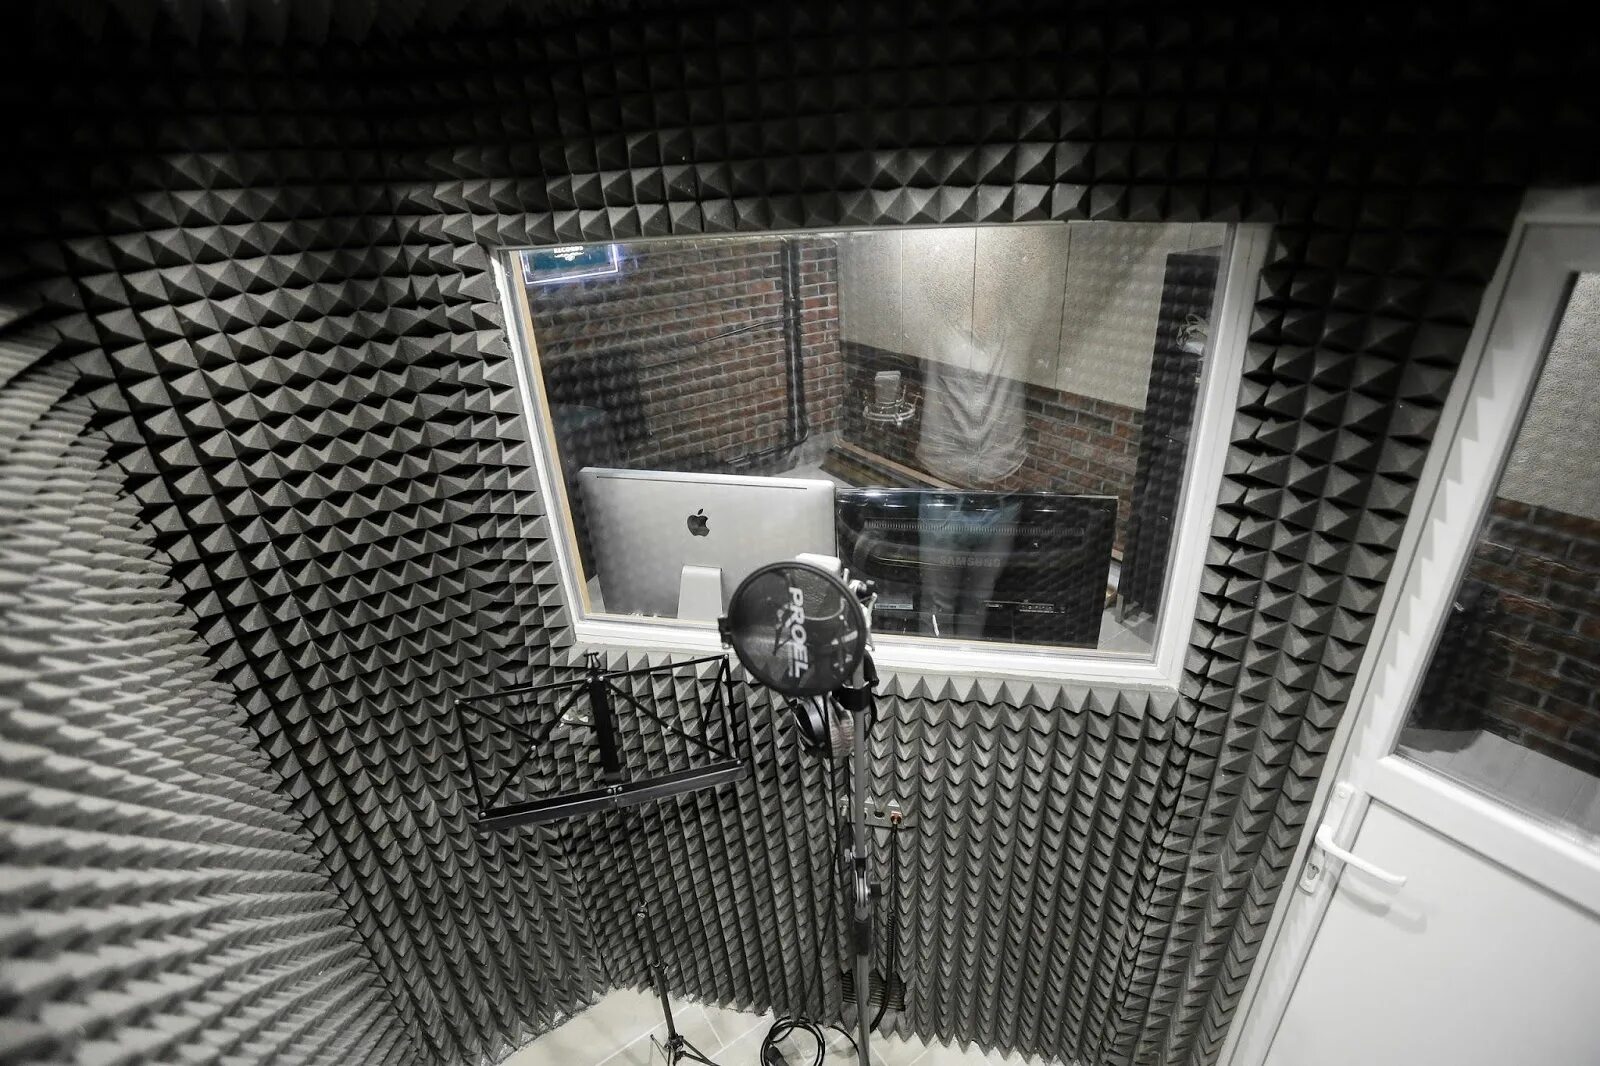 Шумоизоляция potolka студии звукозаписи. Шумоизолированная домашняя студия звукозаписи. Шумоизоляция для студии звукозаписи. Кабина звукозаписи.